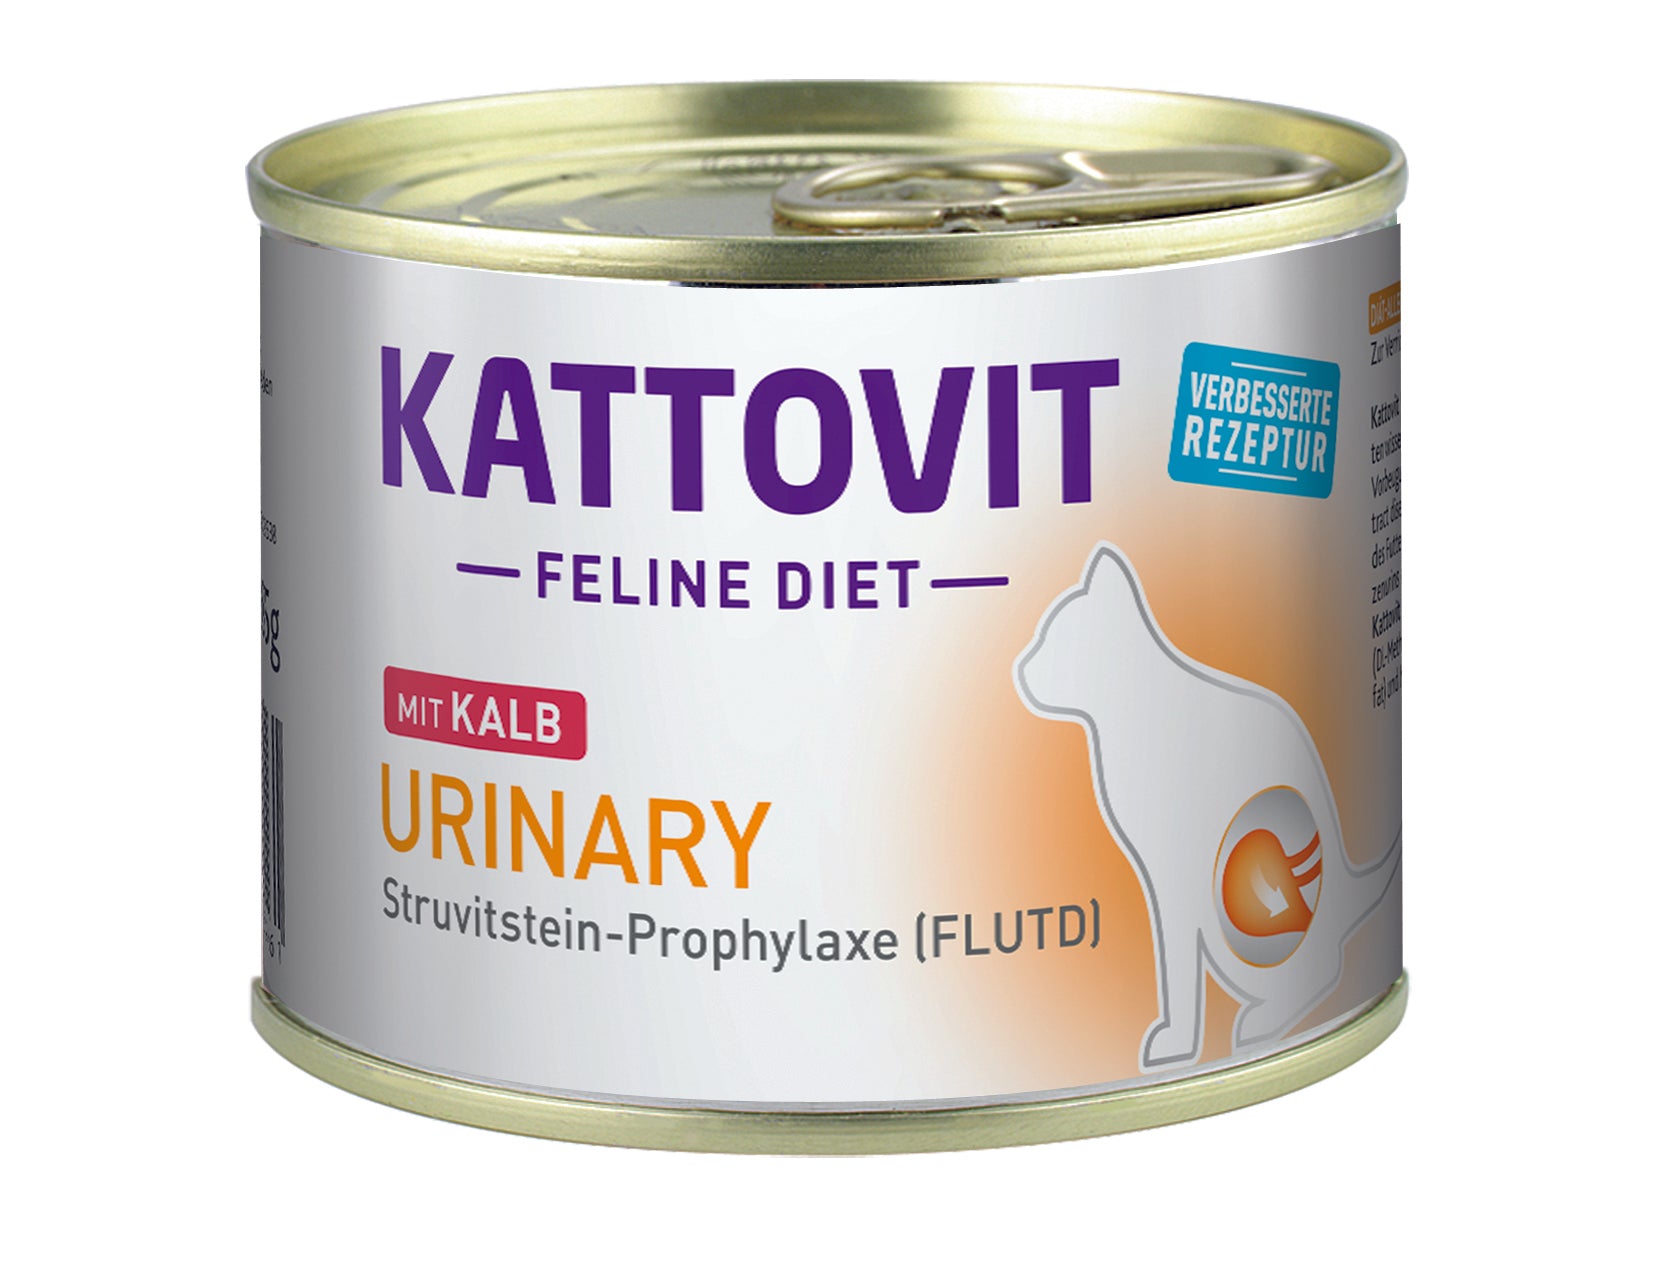 Artikel mit dem Namen Kattovit Feline Diet Urinary im Shop von zoo.de , dem Onlineshop für nachhaltiges Hundefutter und Katzenfutter.